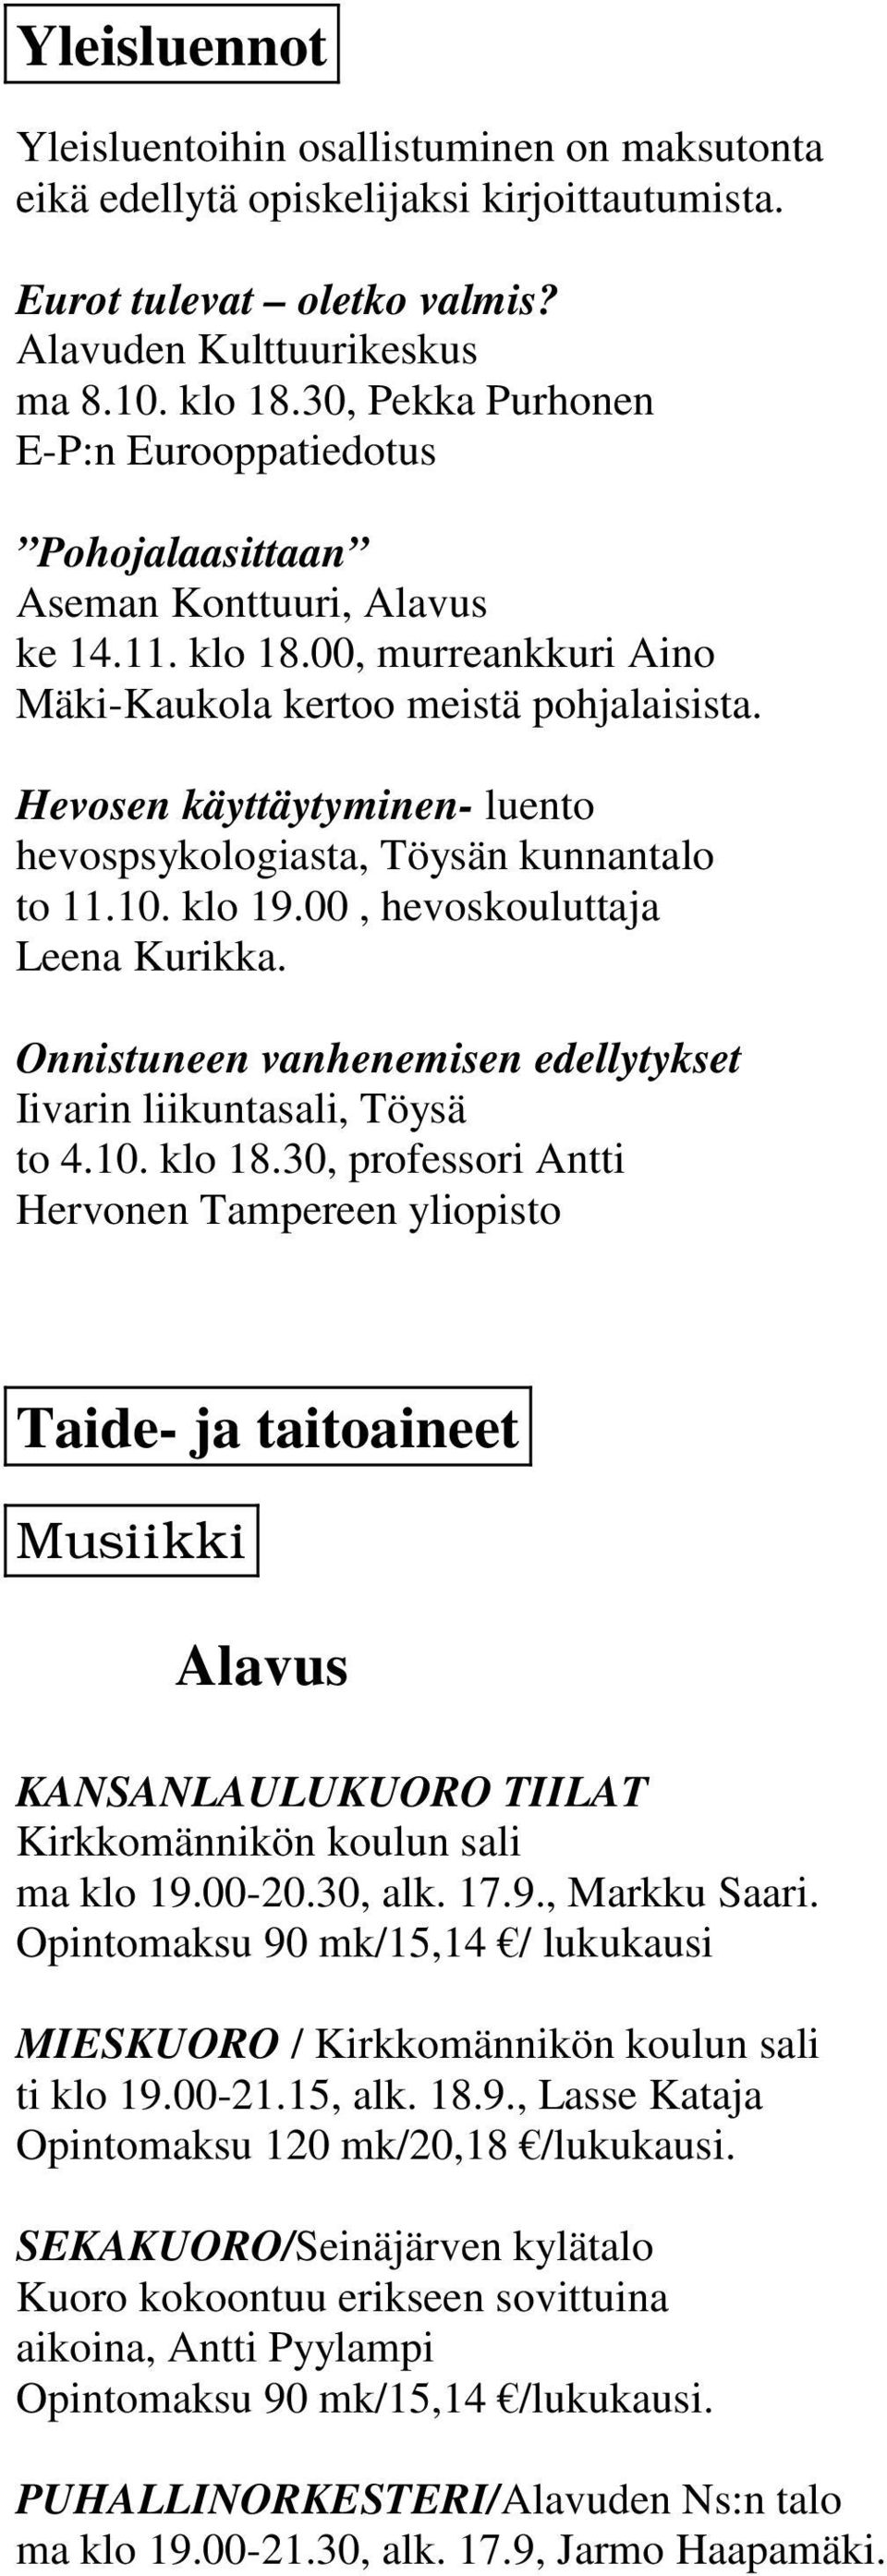 Hevosen käyttäytyminen- luento hevospsykologiasta, Töysän kunnantalo to 11.10. klo 19.00, hevoskouluttaja Leena Kurikka. Onnistuneen vanhenemisen edellytykset Iivarin liikuntasali, Töysä to 4.10. klo 18.